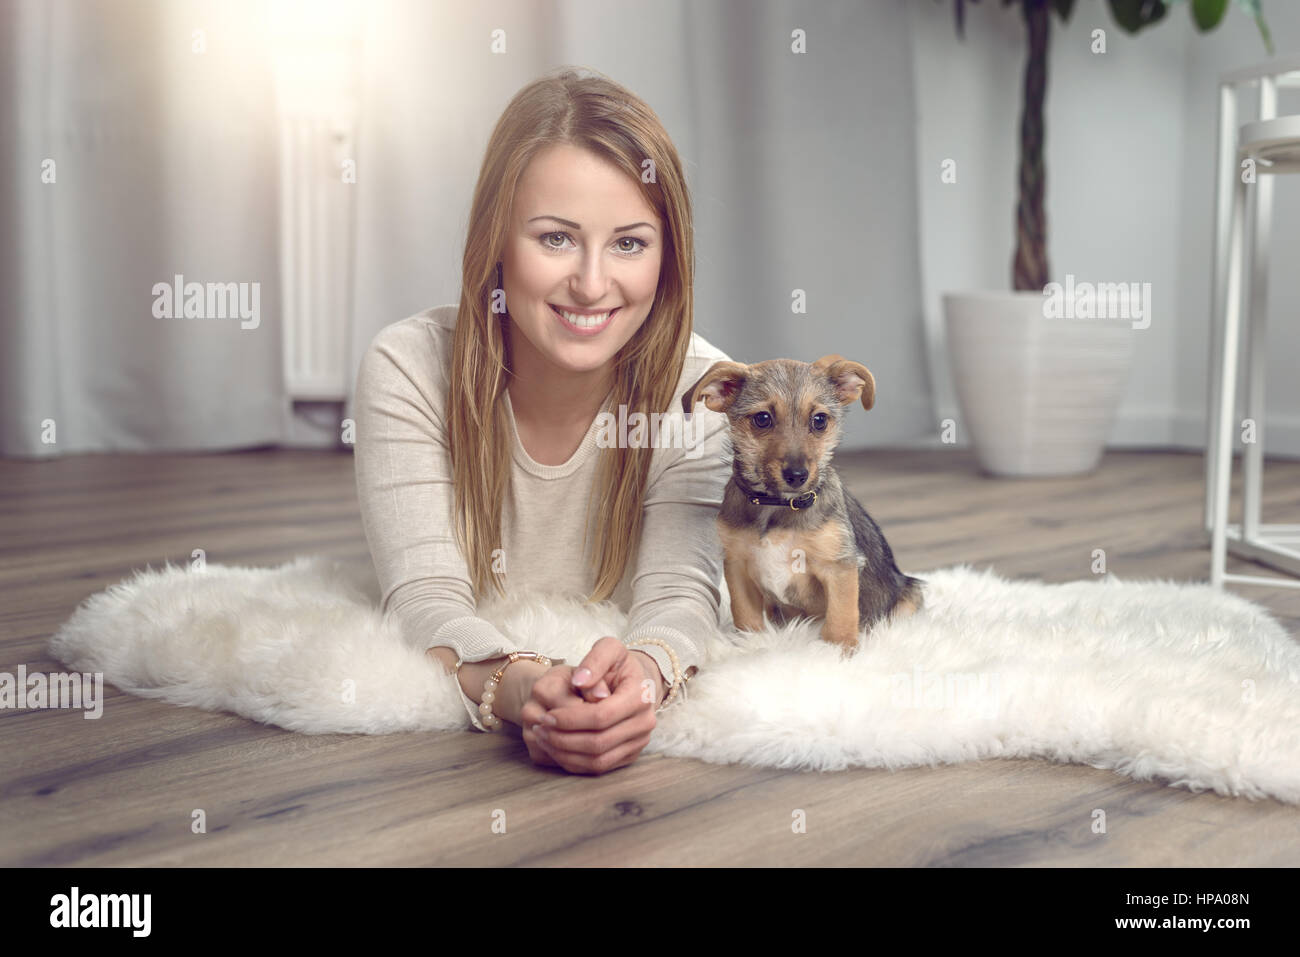 Jolie femme sympa posant avec son petit chien sur un tapis moelleux sur un plancher de bois dans le salon en souriant joyeusement à l'appareil photo Banque D'Images